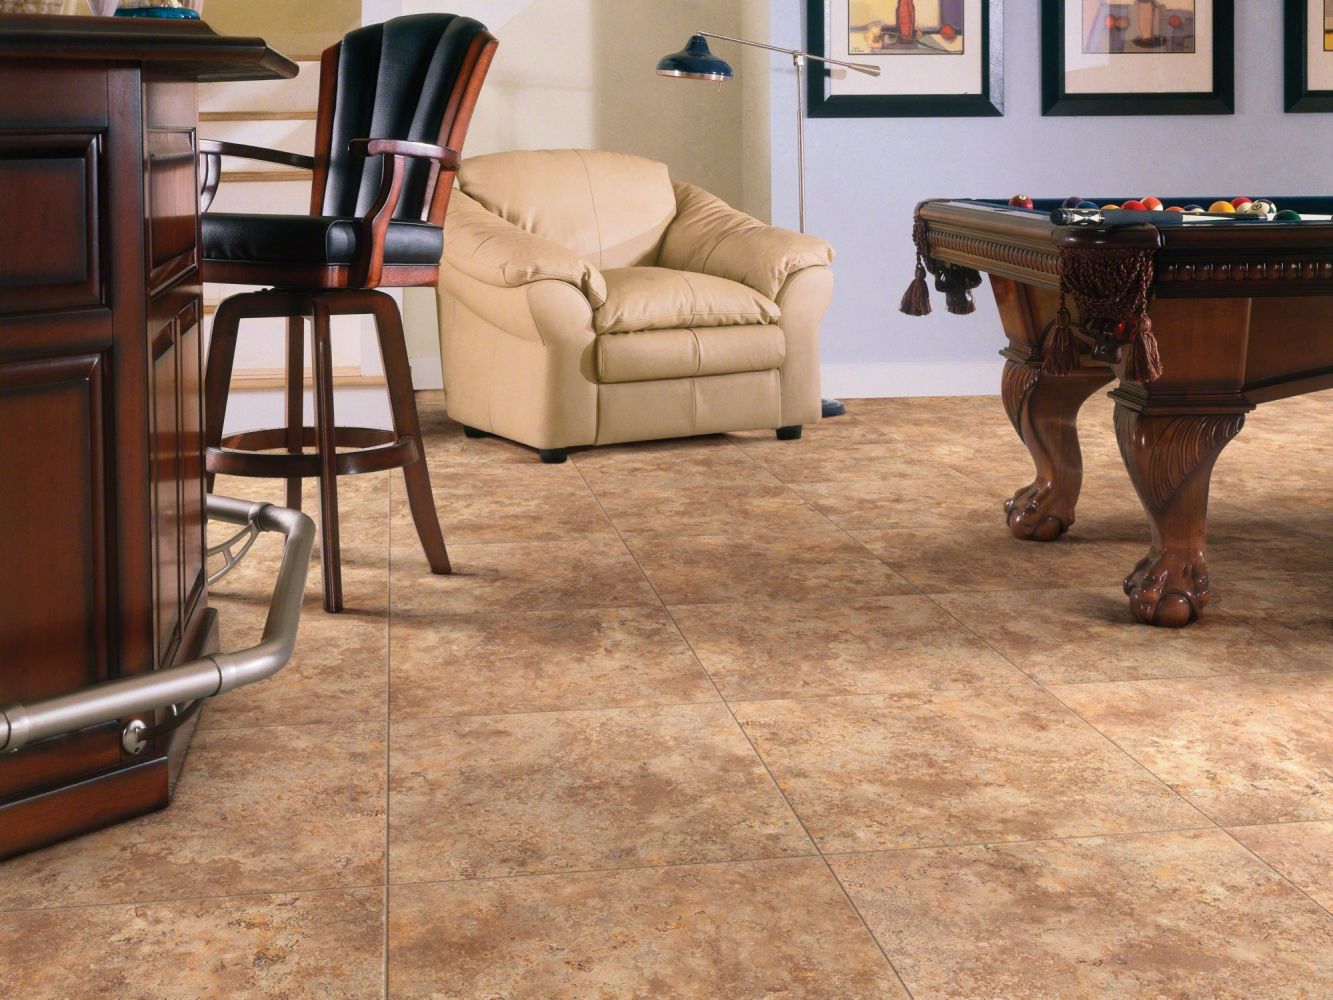 Shaw Floors Resilient Residential Resort Tile Baked Clay 00670_0189V